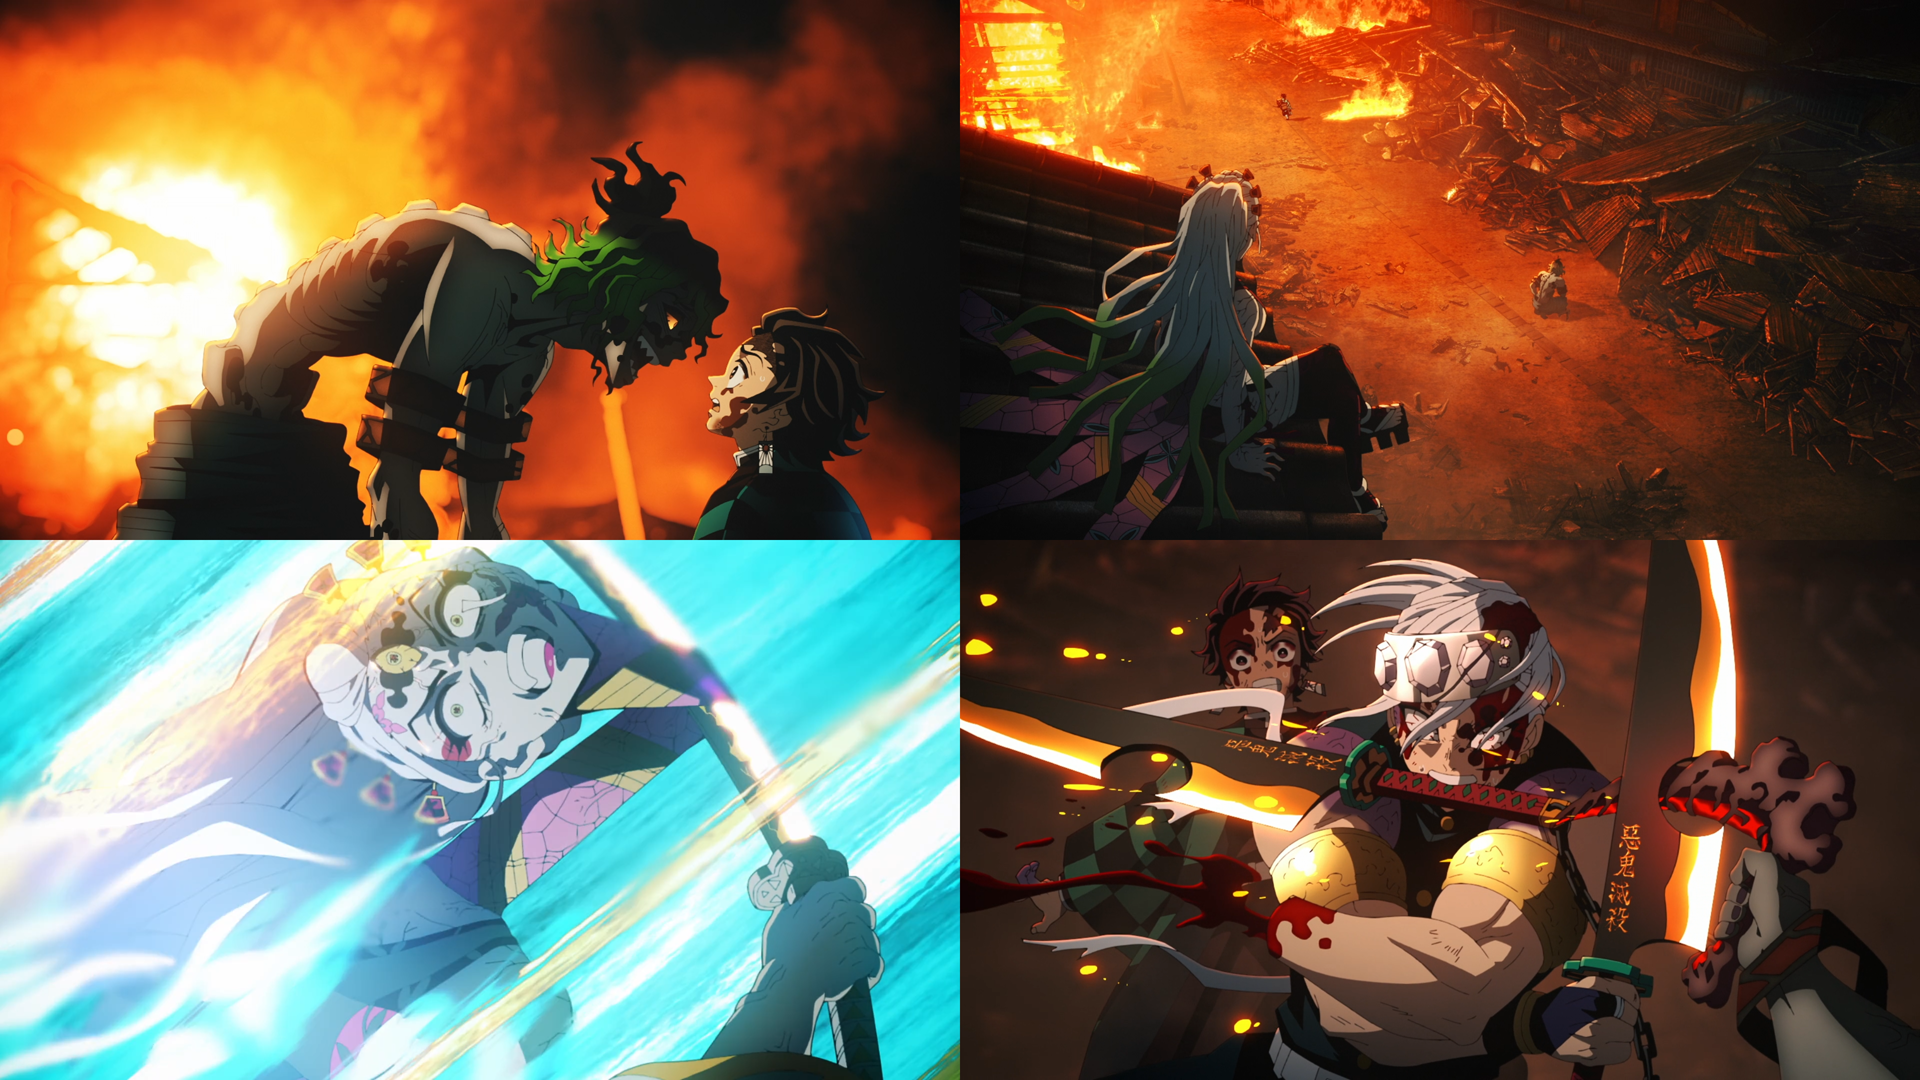 Tanjiro's Fire Blade! Demon Slayer: Kimetsu no Yaiba LIVE REACTION! Episode  19 